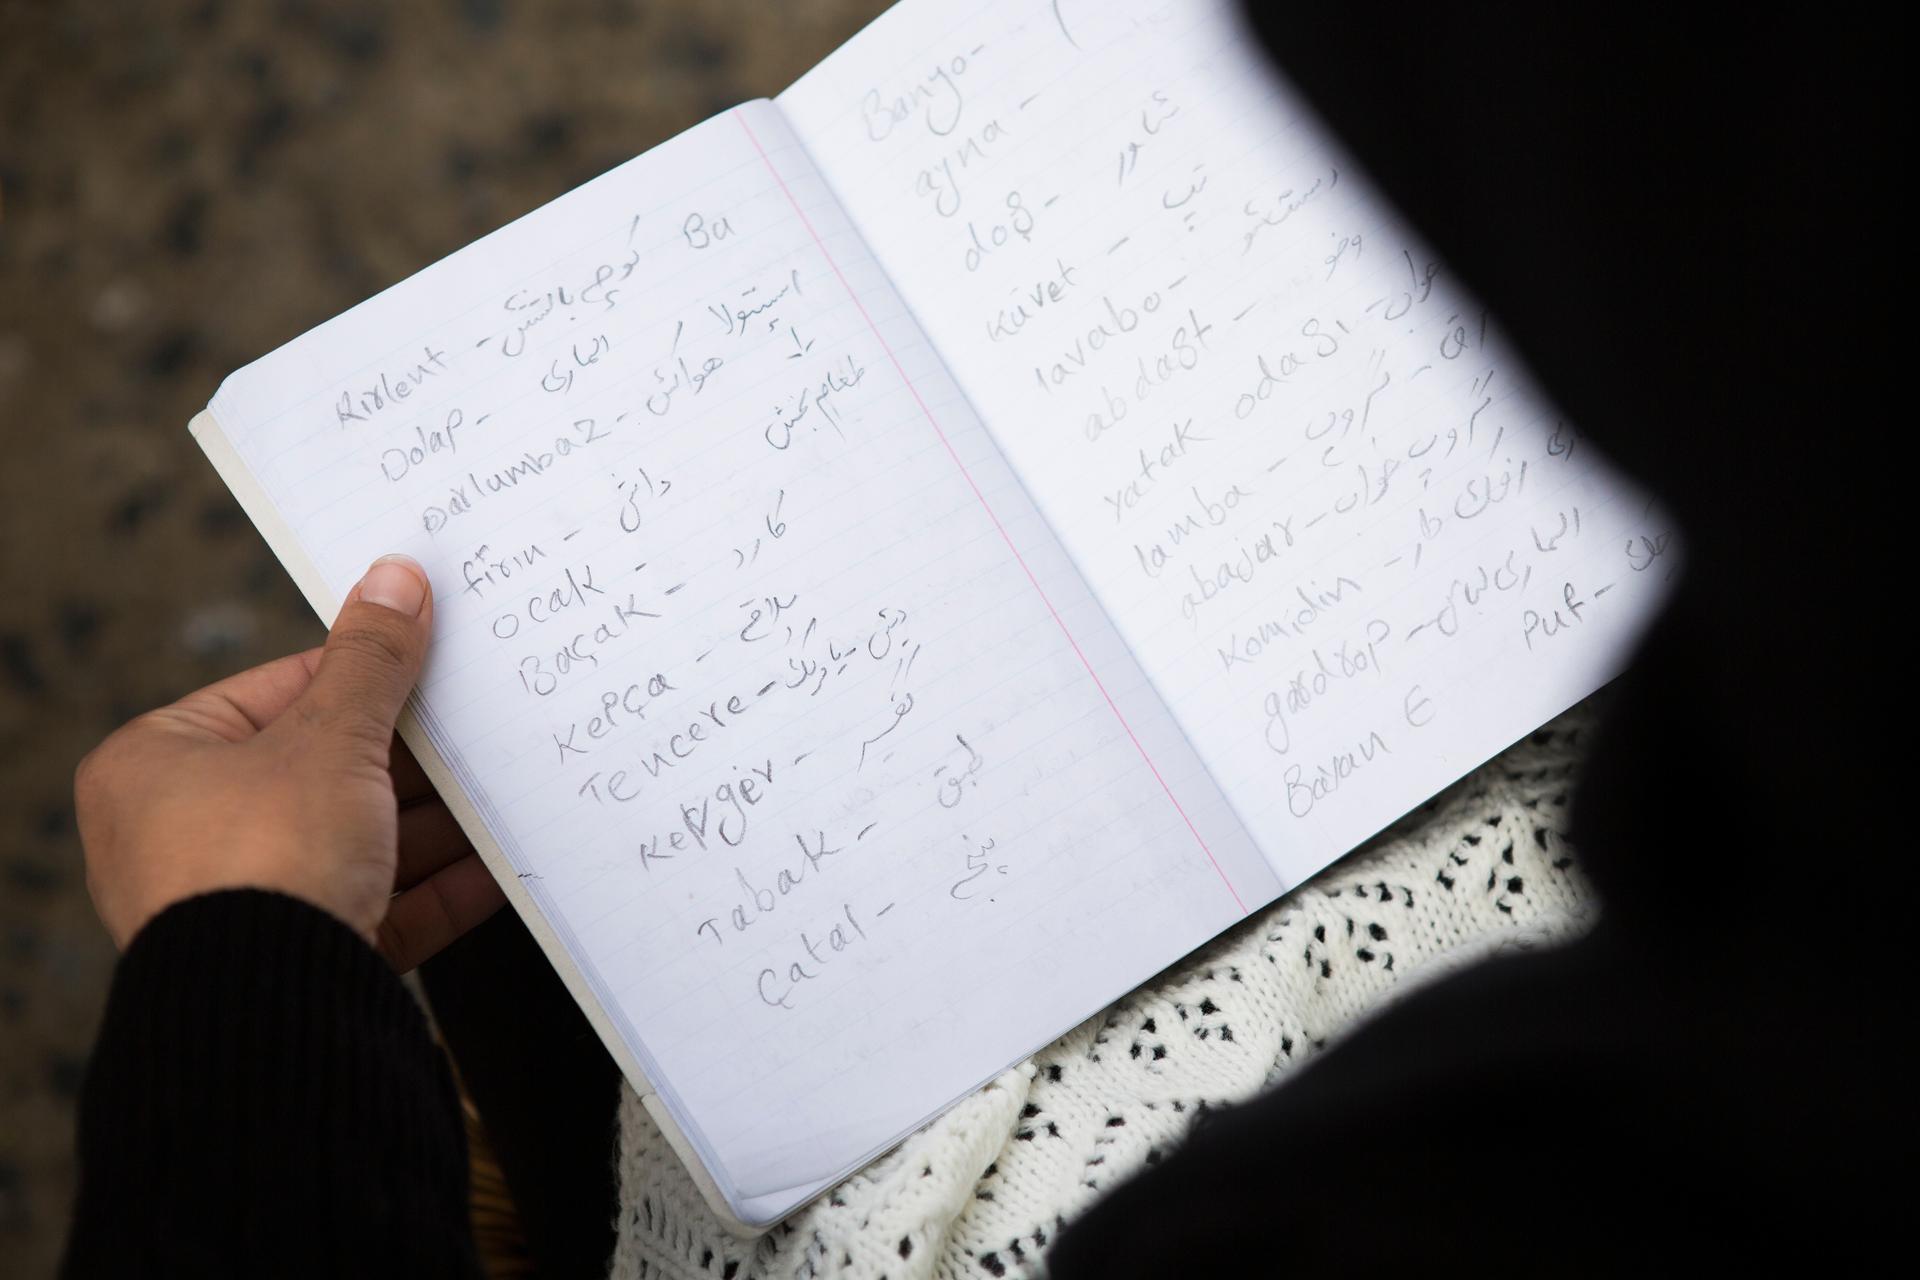 In her notebook, Hoor writes Turkish words